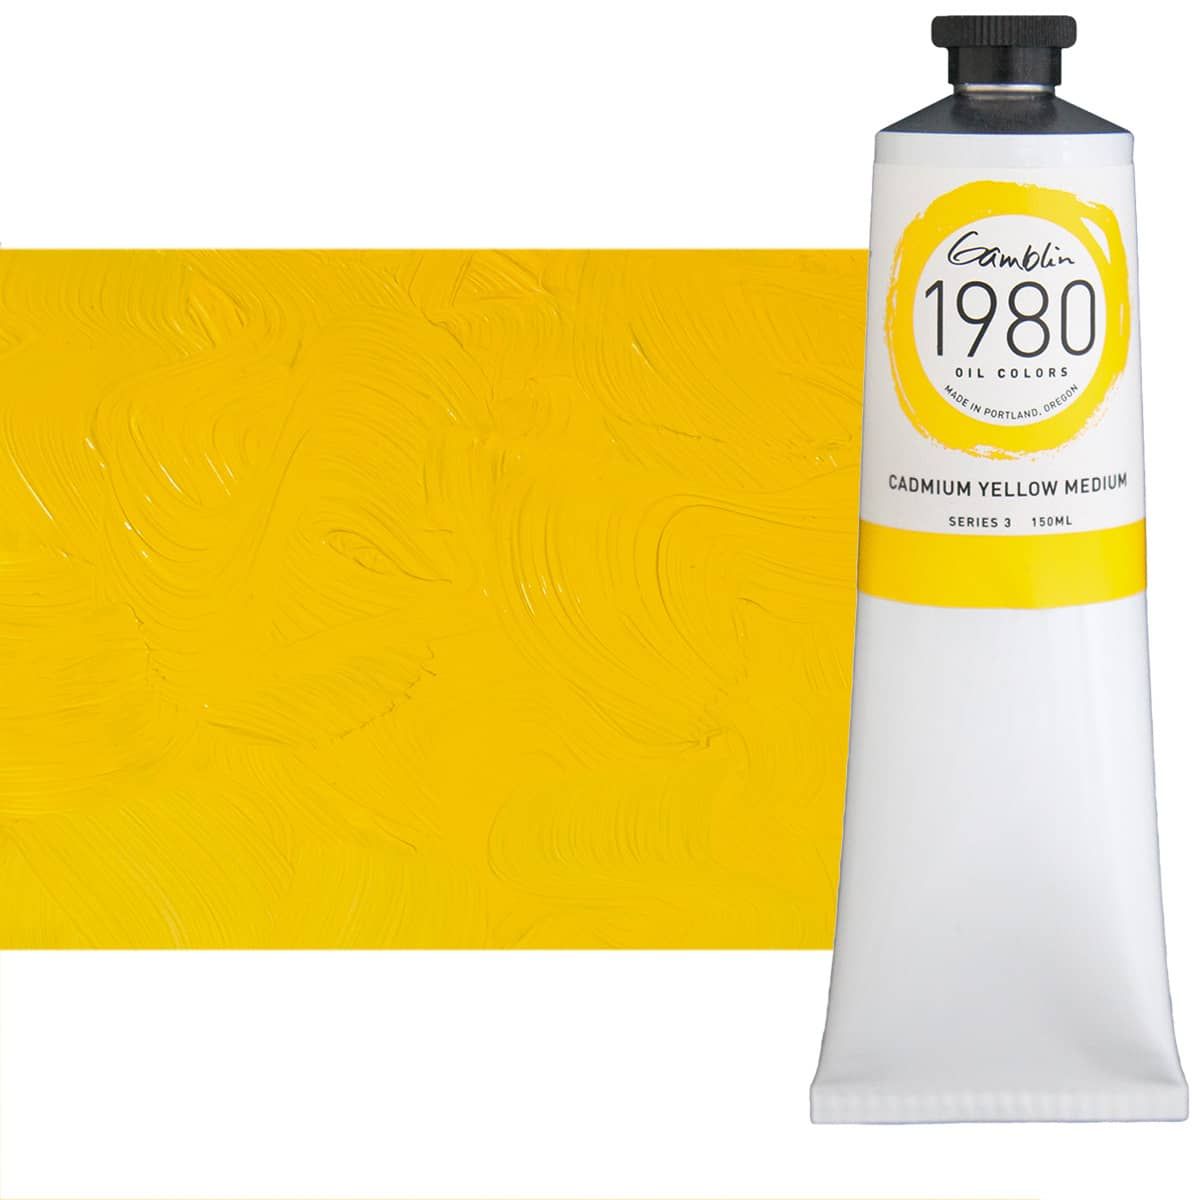 Gamblin 1980 Oil Colors - Cadmium Yellow Medium, 150ml Tube